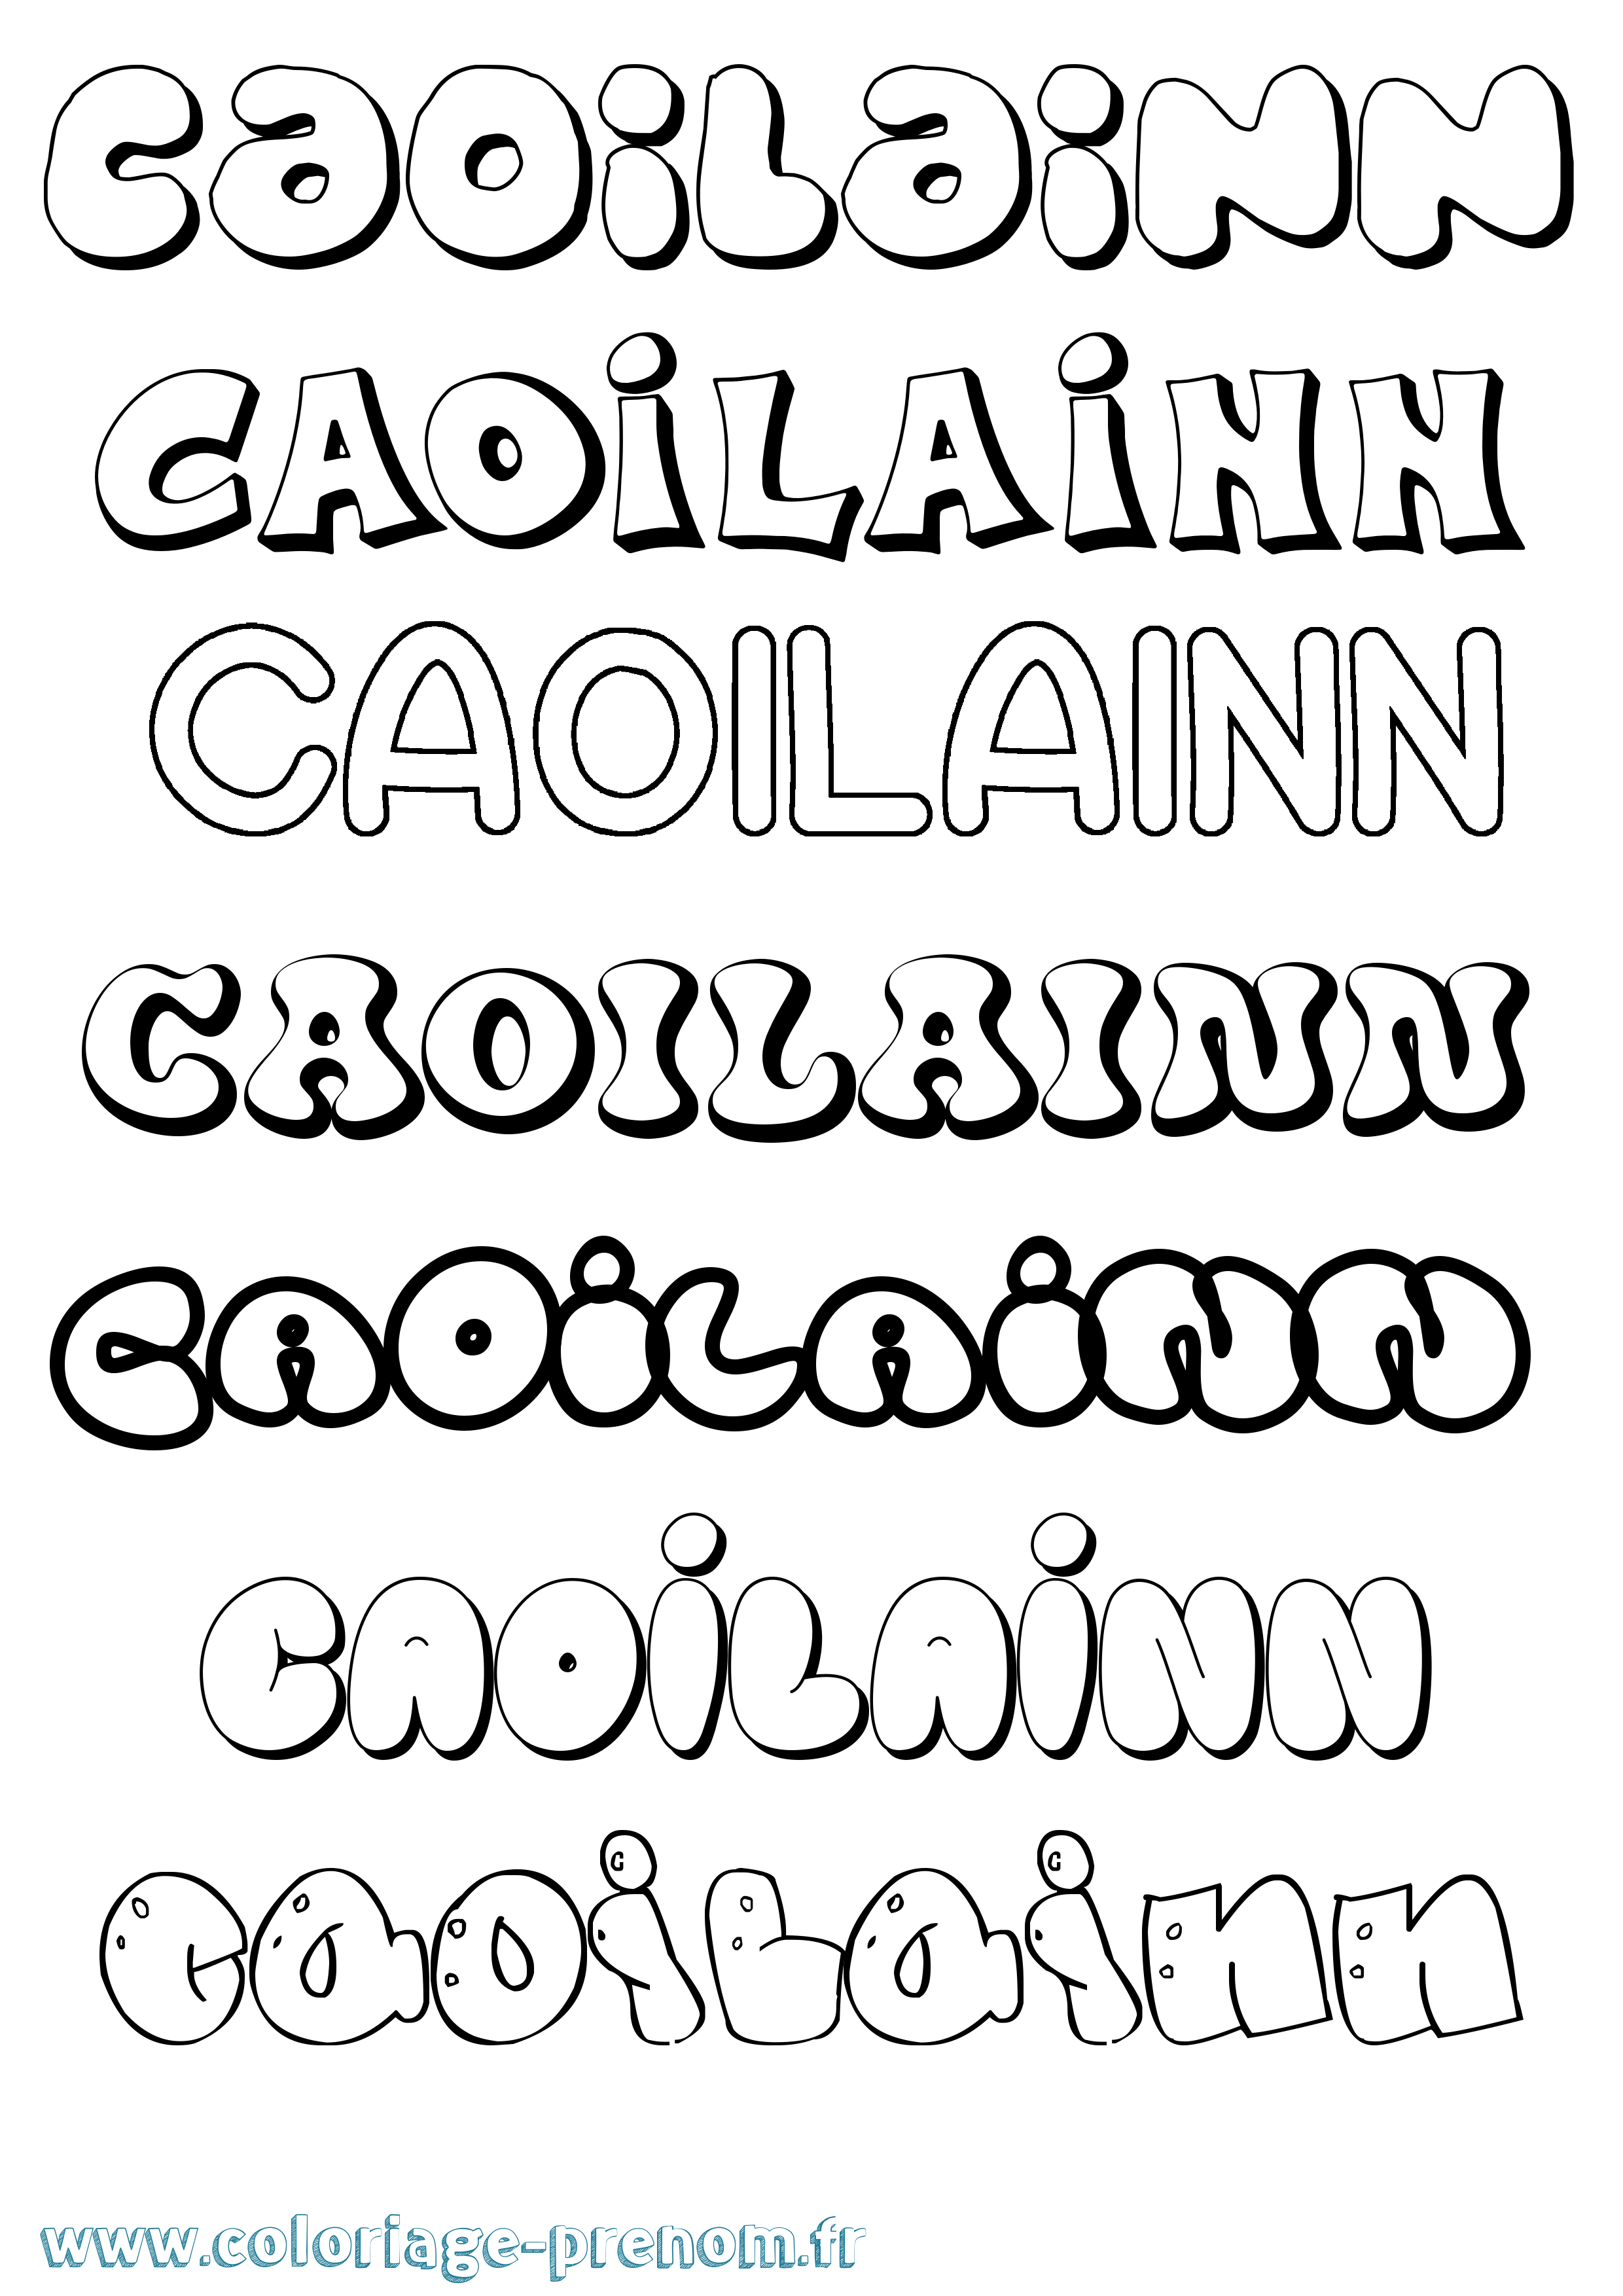 Coloriage prénom Caoilainn Bubble